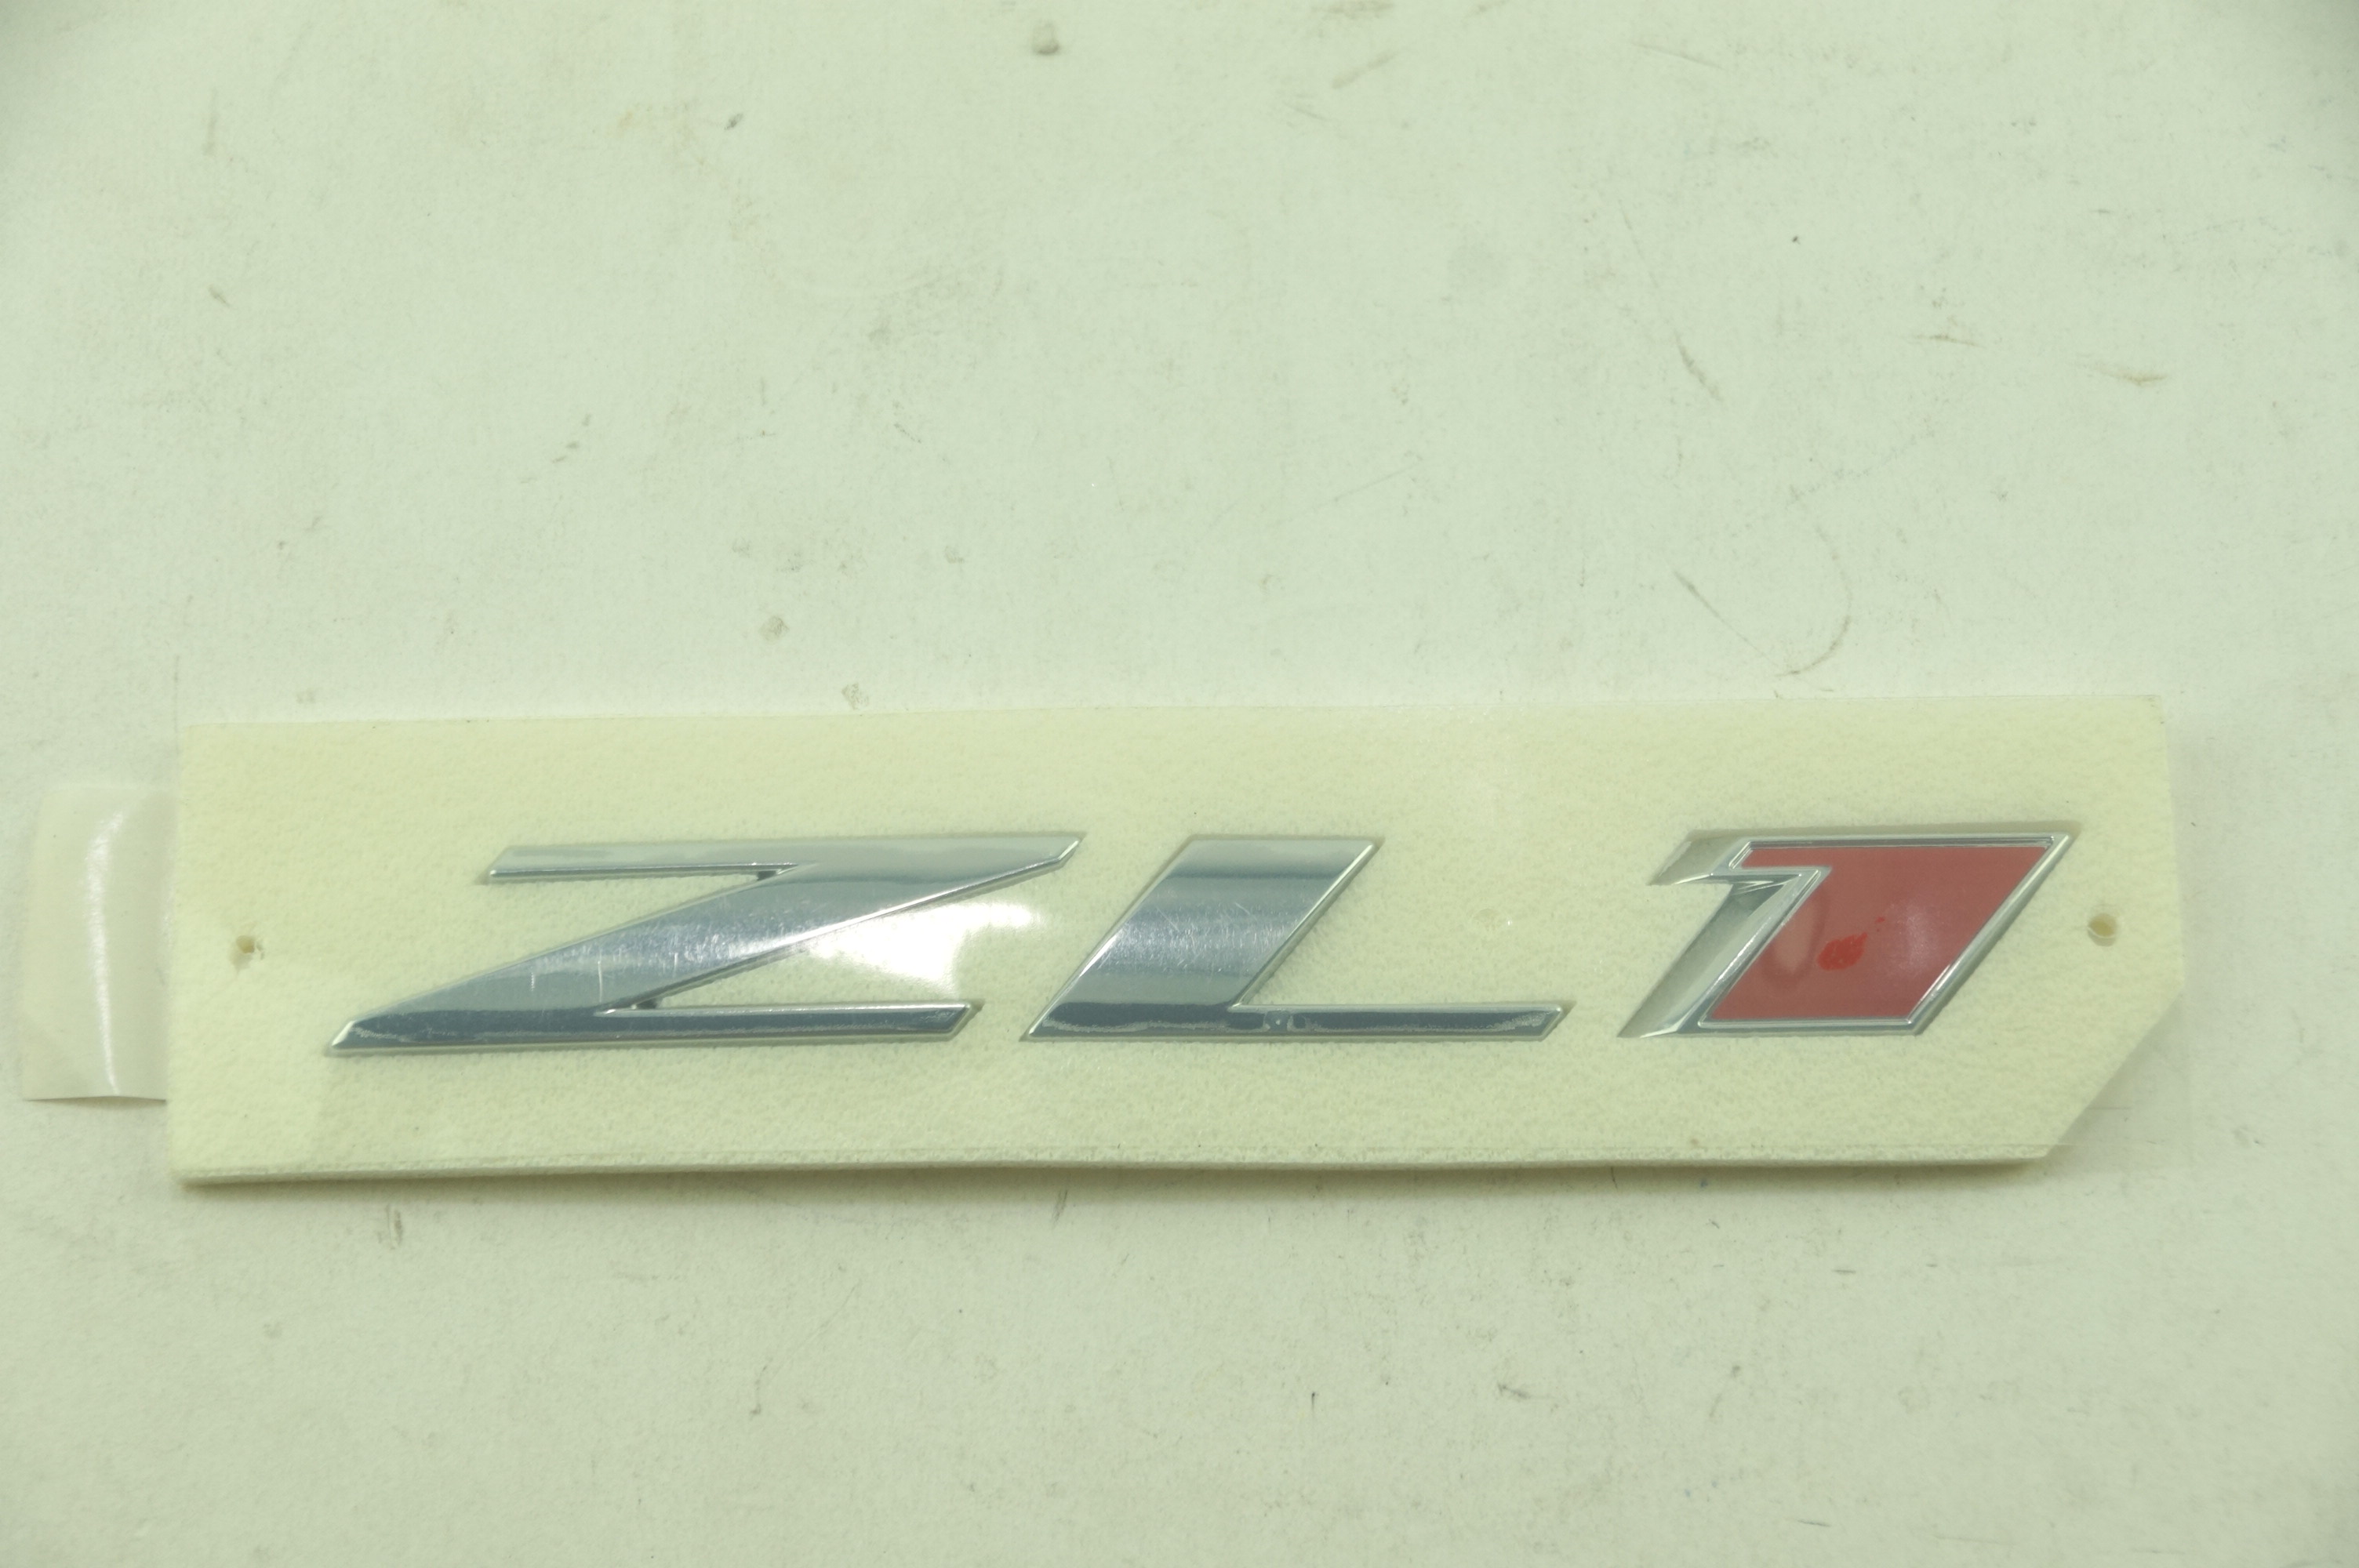 New OEM 84046847 GM Chevy 17-18 Camaro Hood Emblem Badge Nameplate Free Shipping - image 1